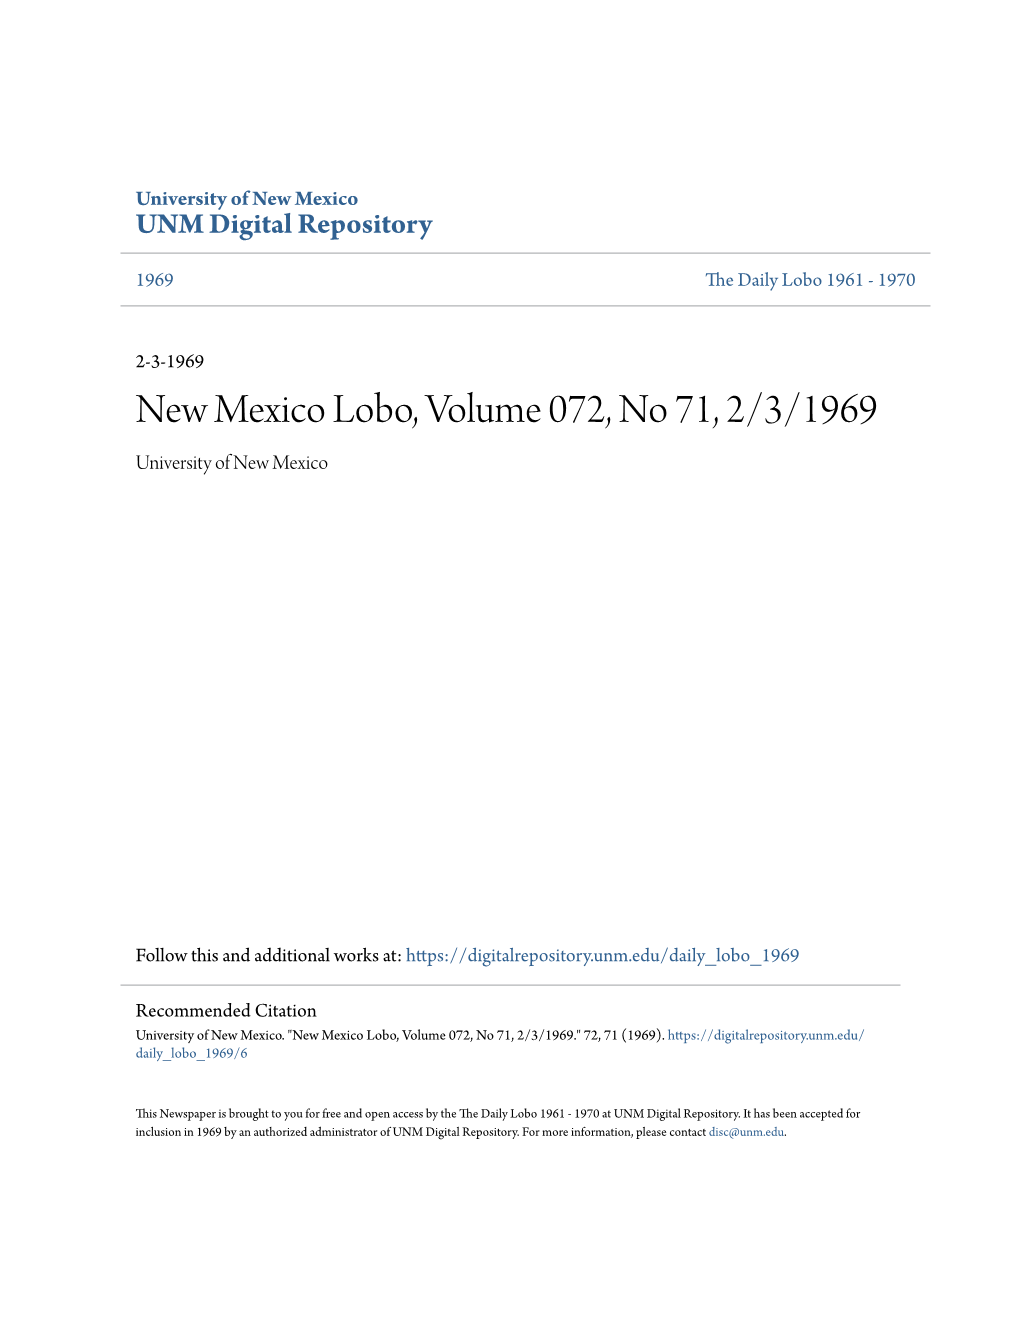 New Mexico Lobo, Volume 072, No 71, 2/3/1969 University of New Mexico